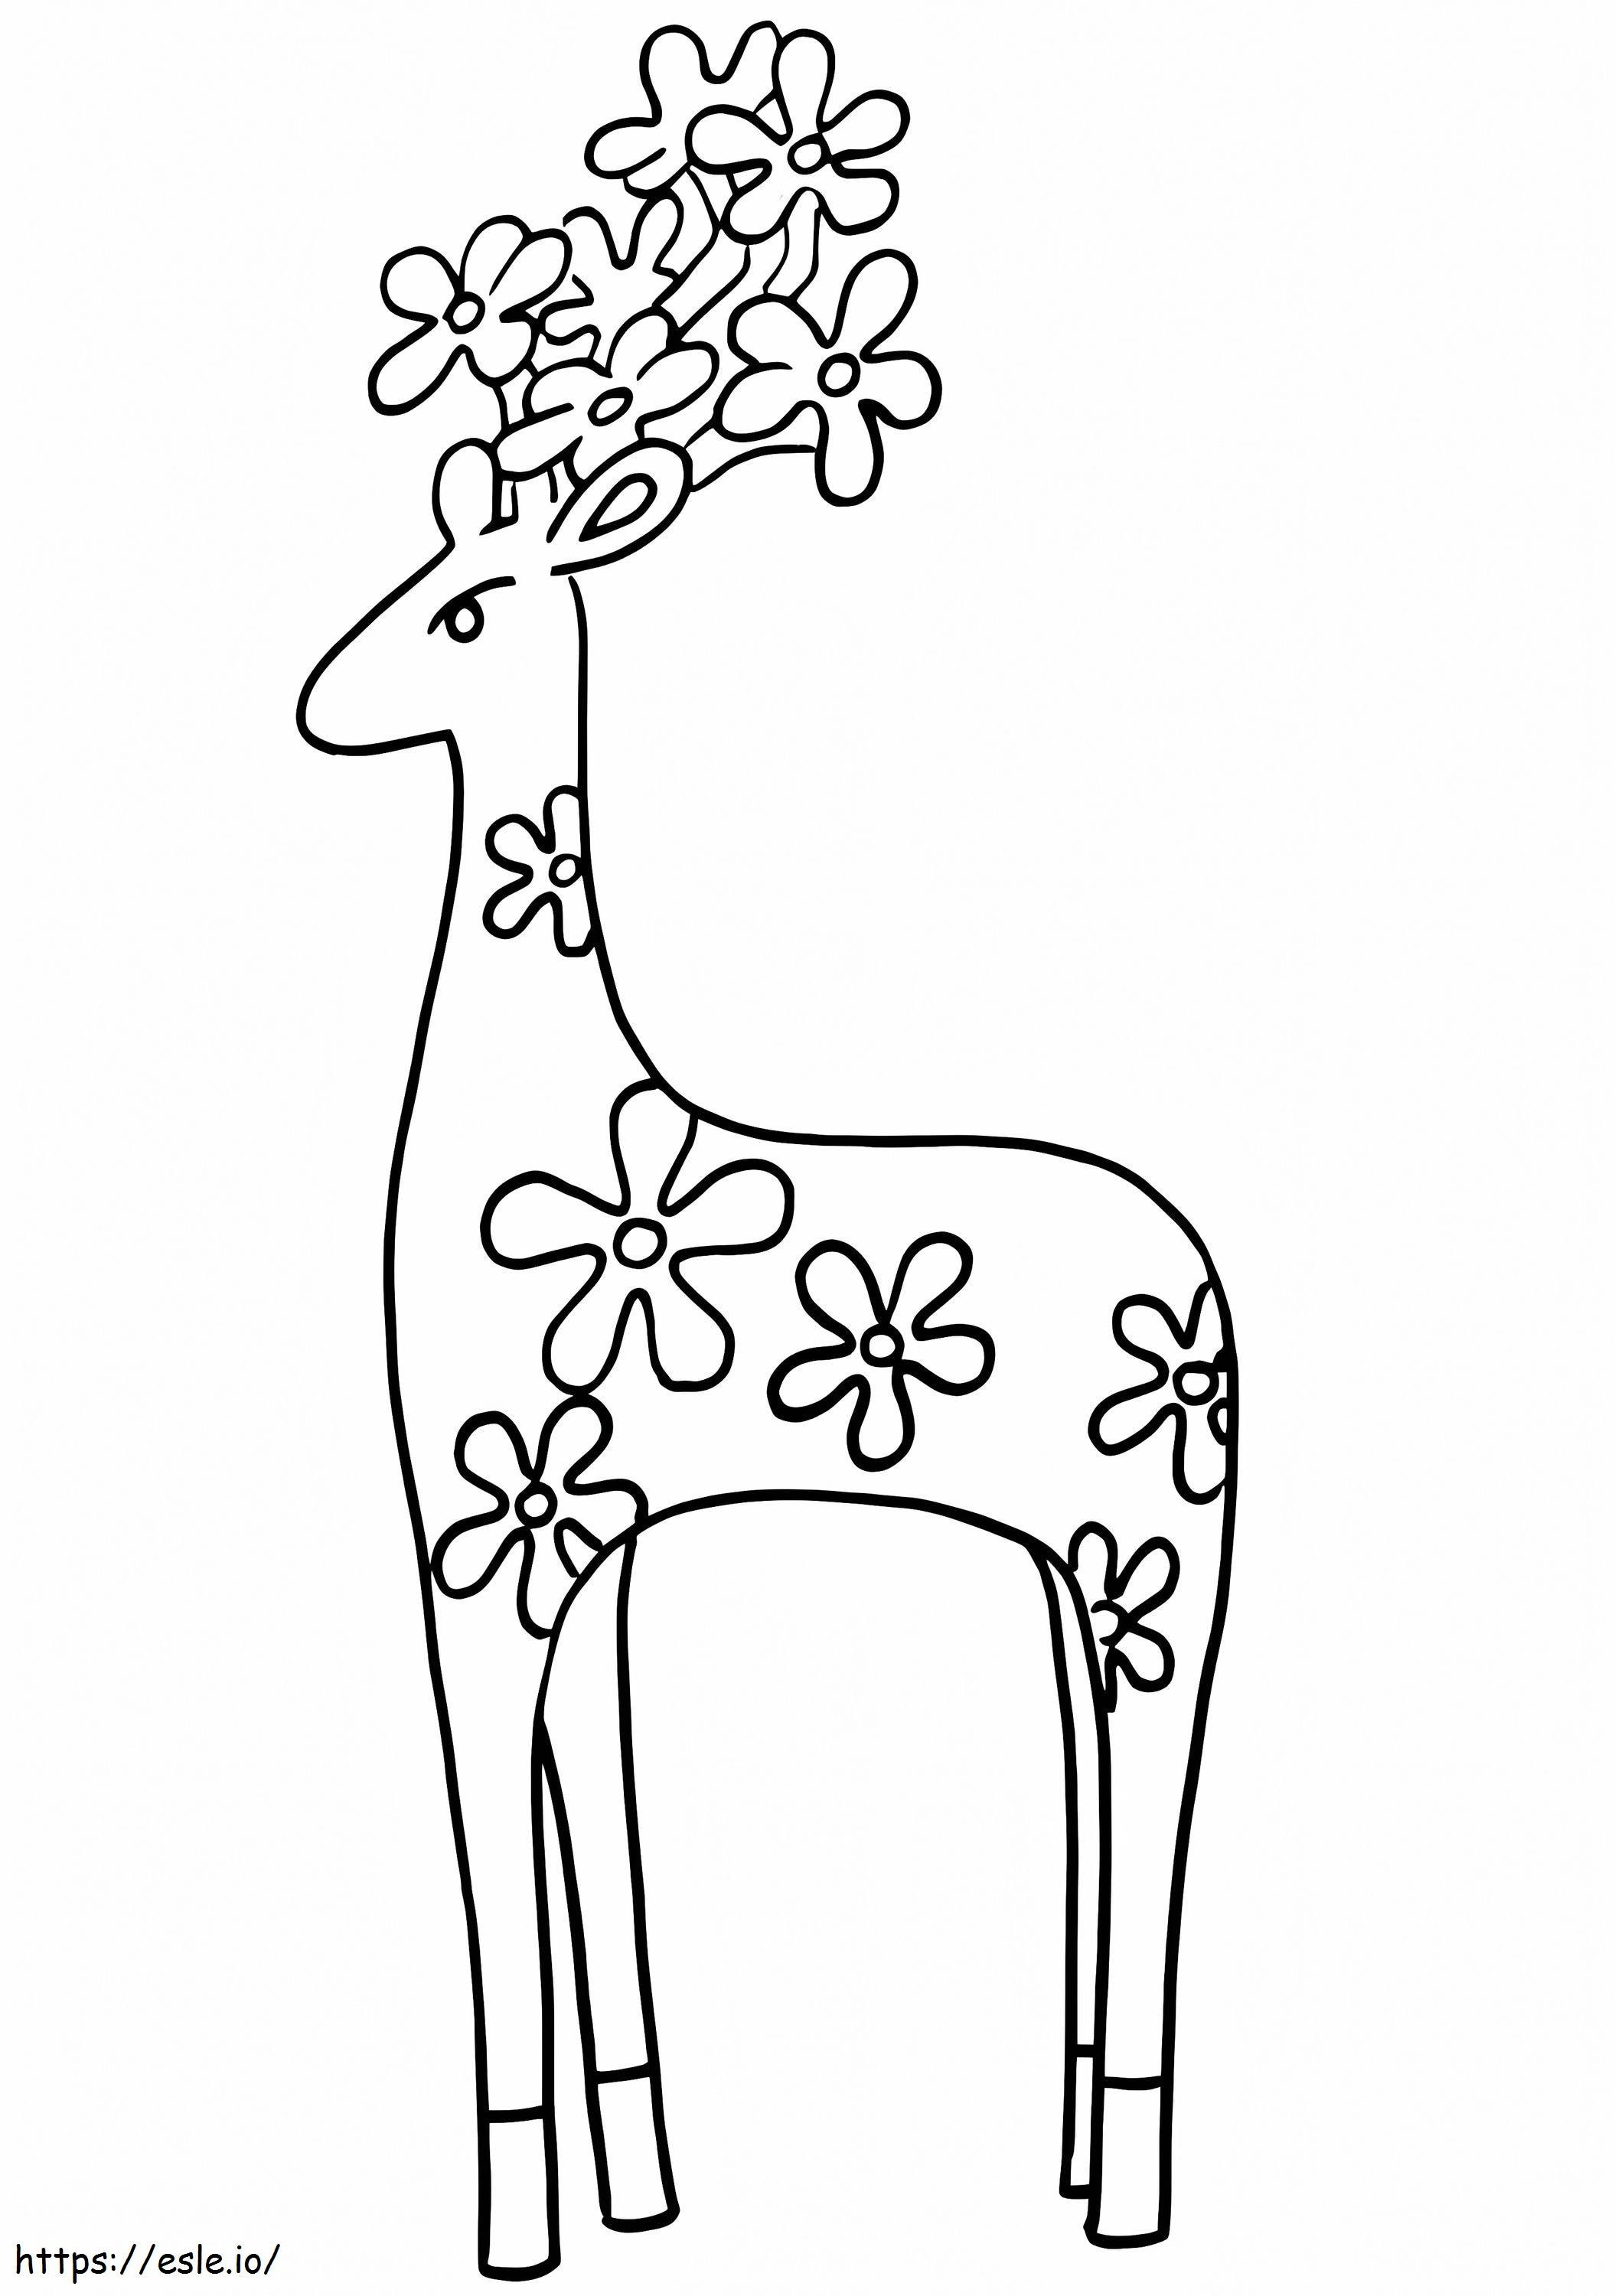 Deer Alebria coloring page